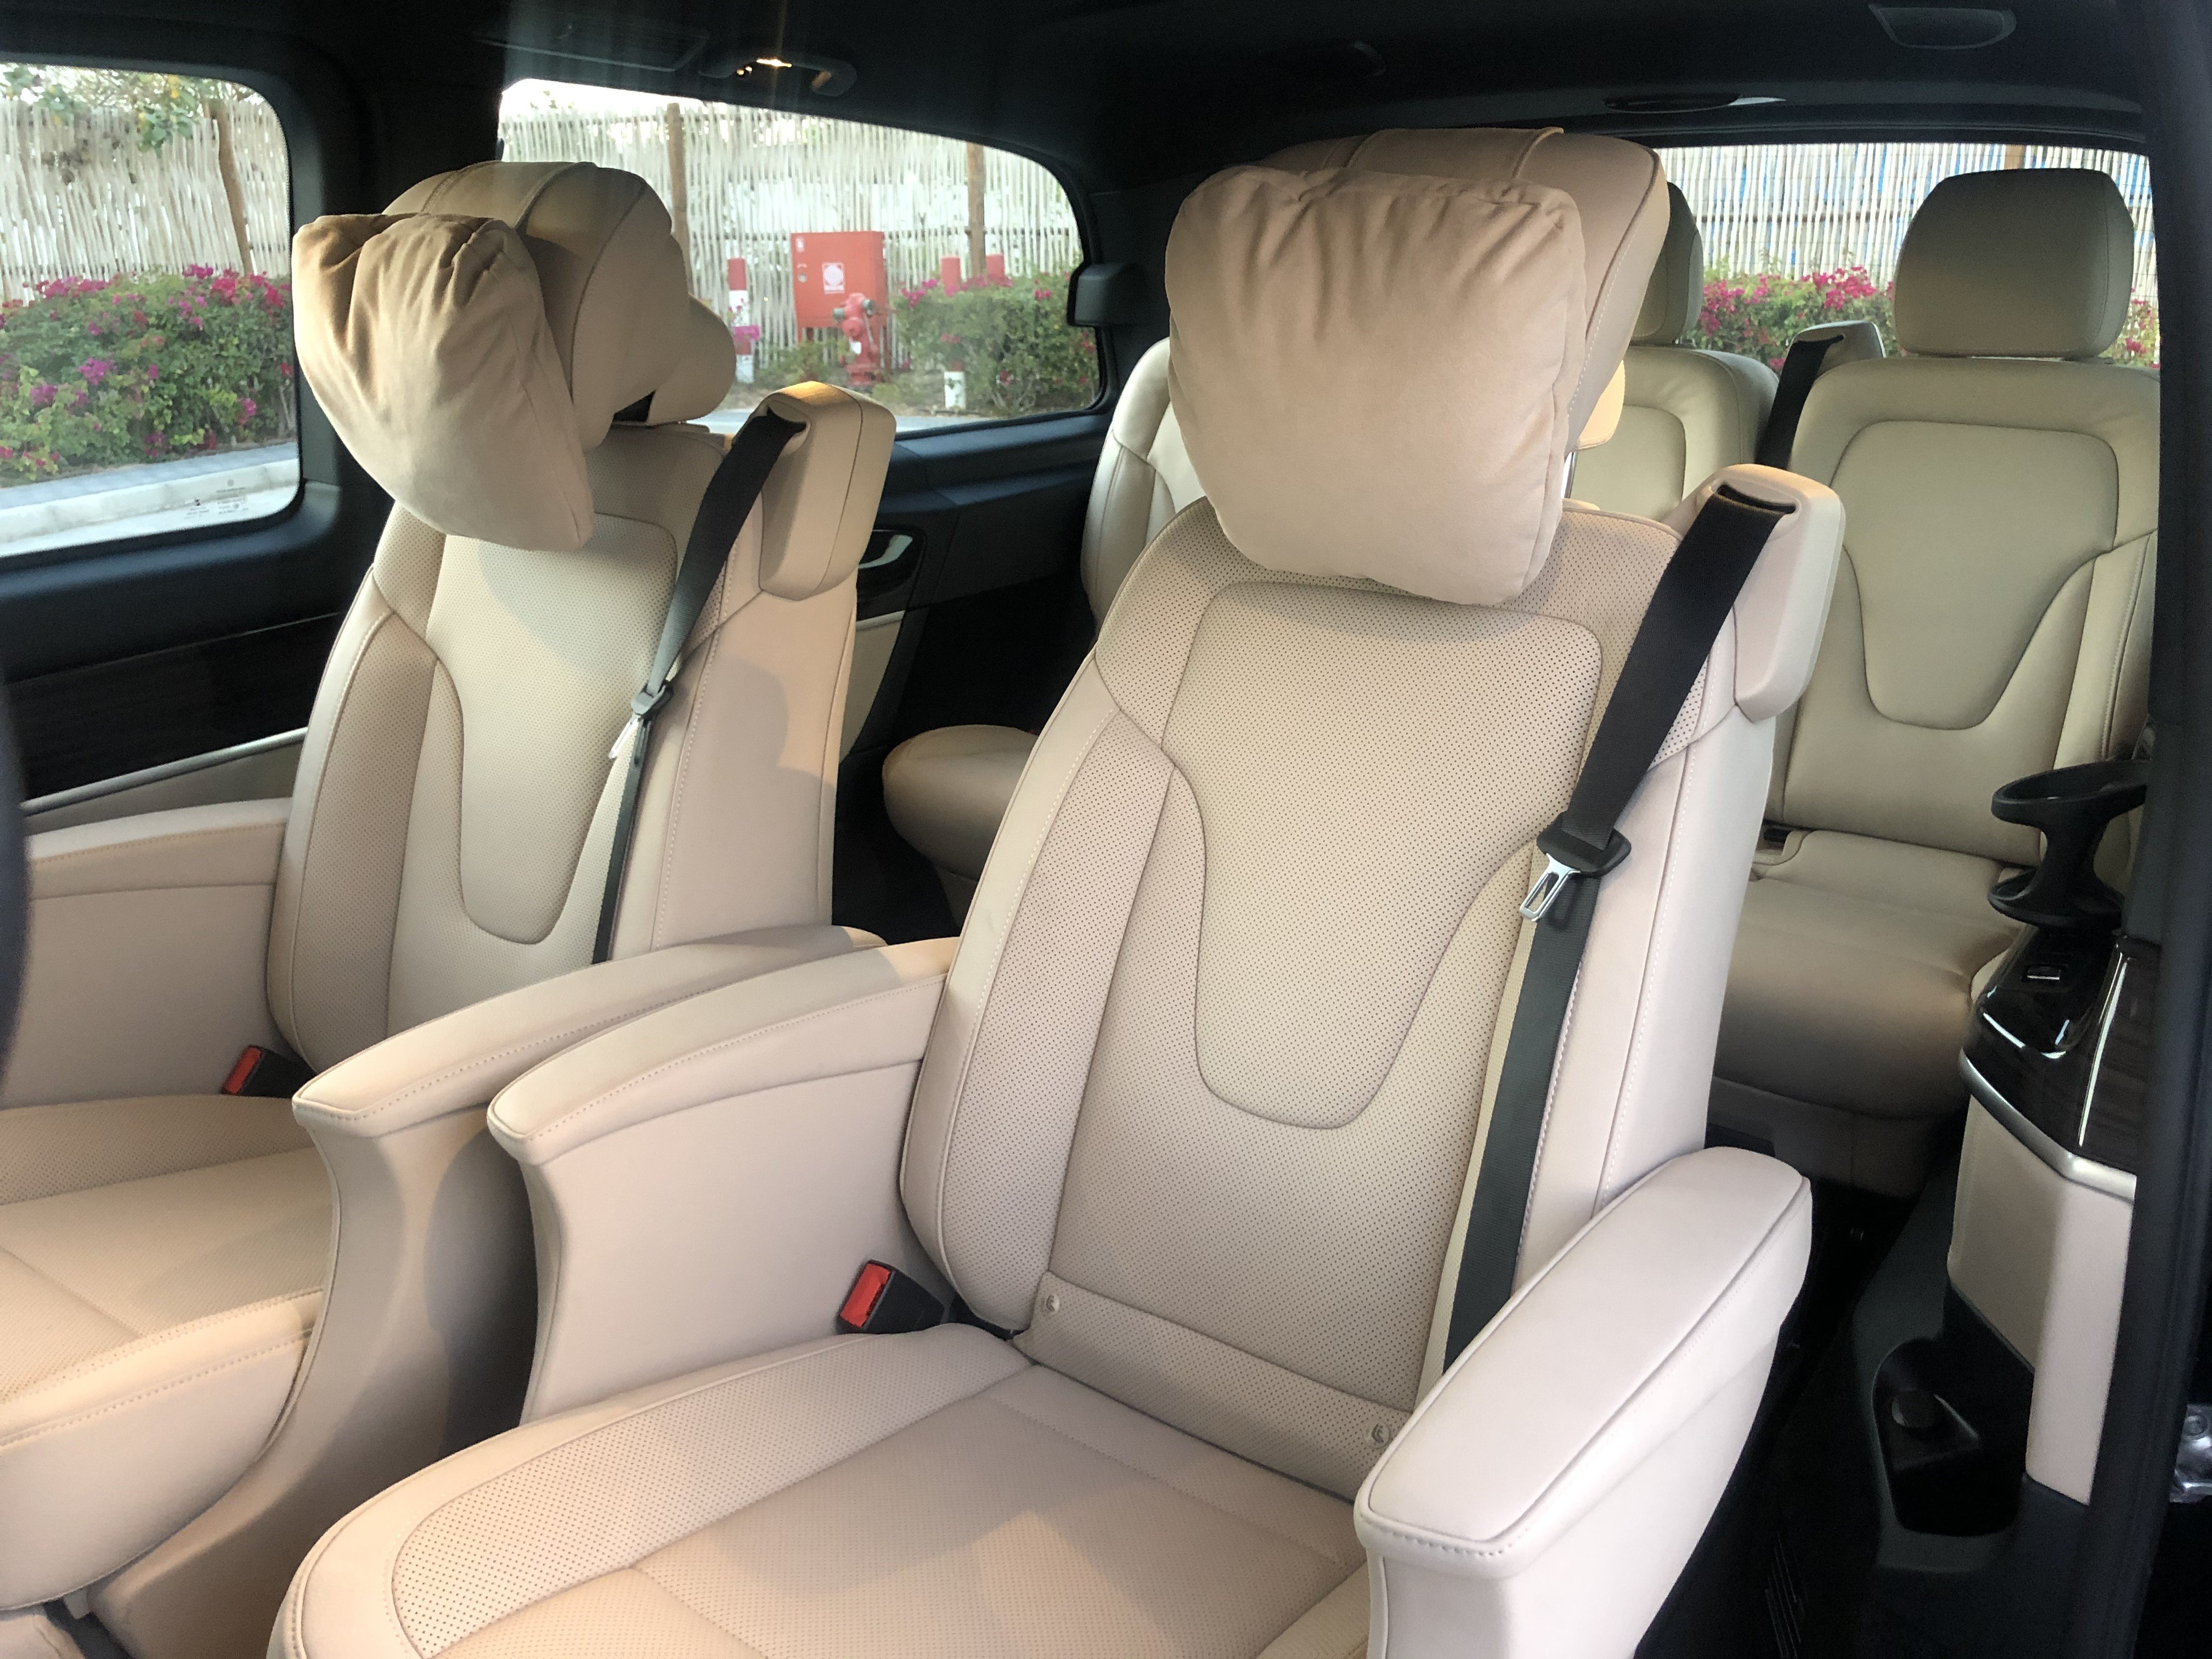 Mercedes Benz Avantgarde Interior Body